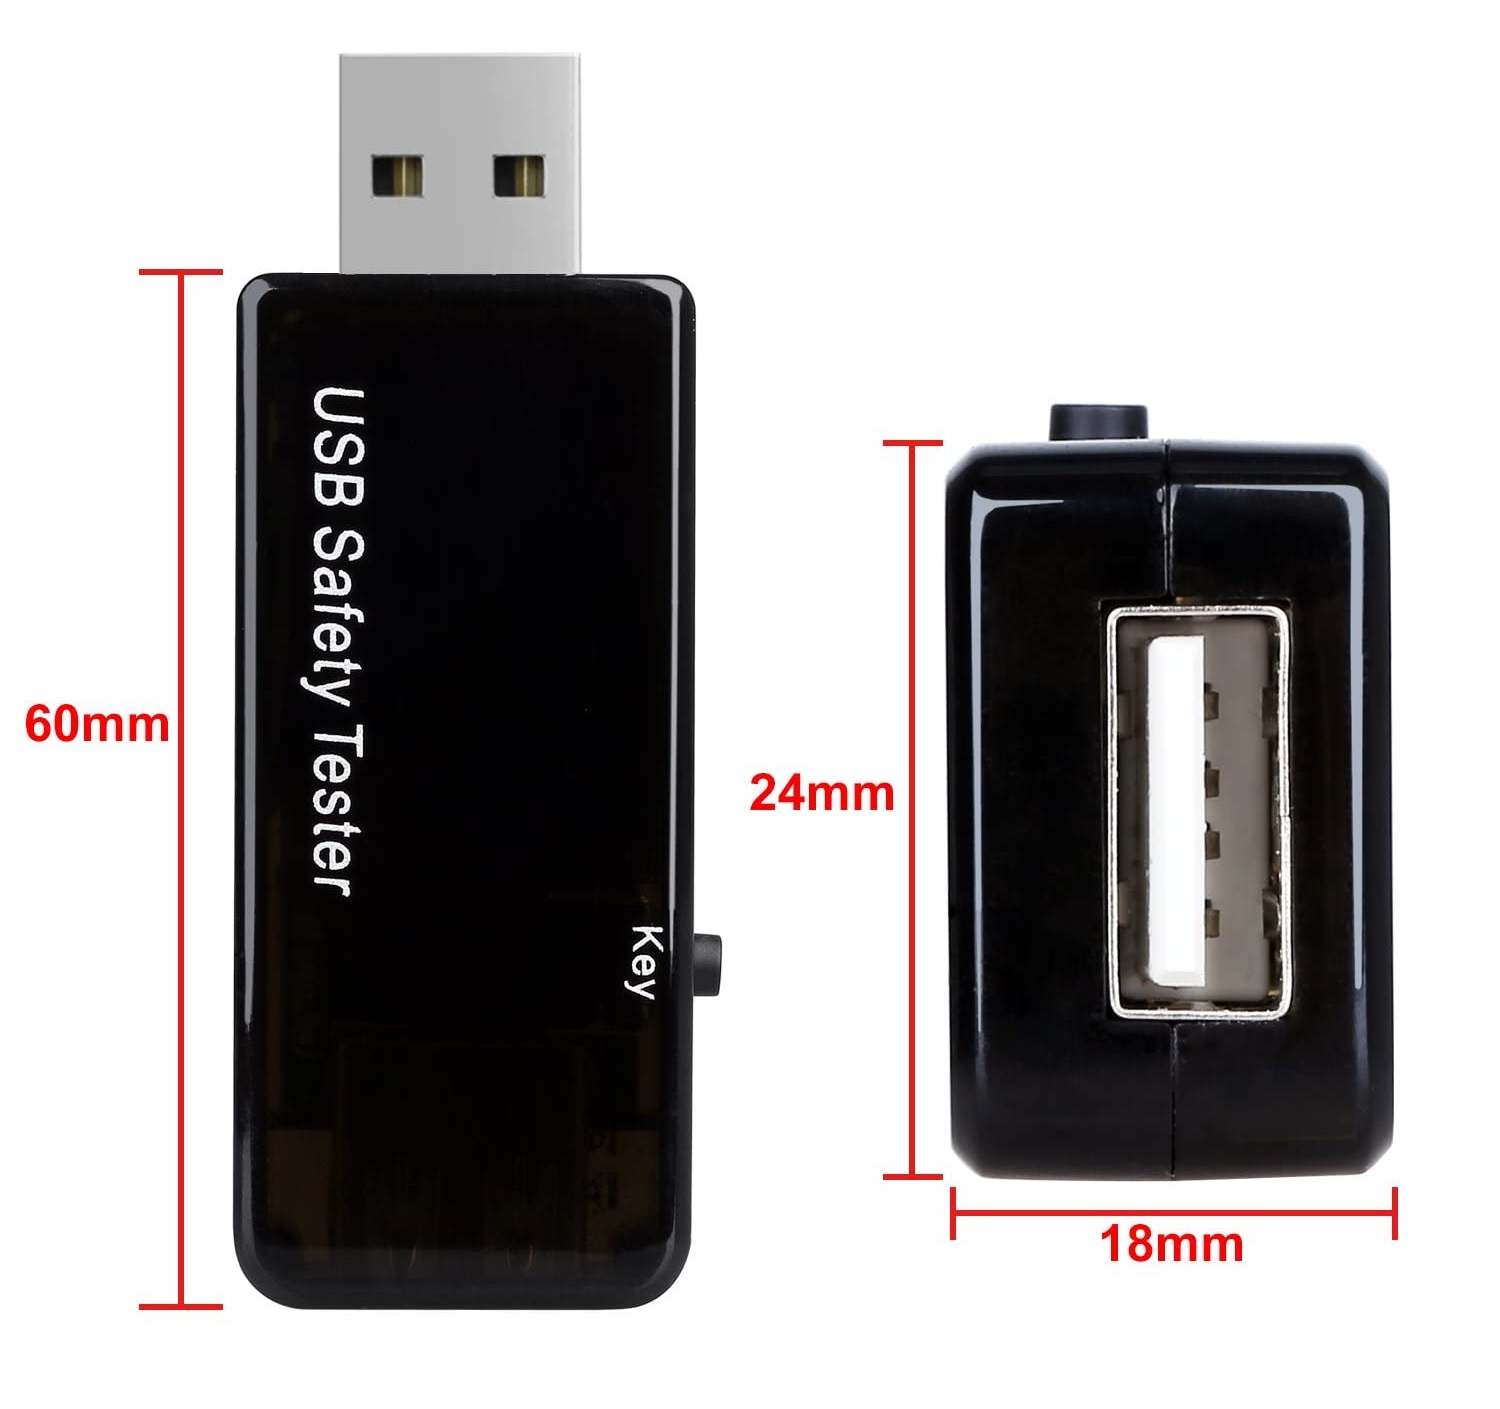 USB Safety Tester USB Digital Power Meter Multimeter Current Voltage Monitor%20(5)